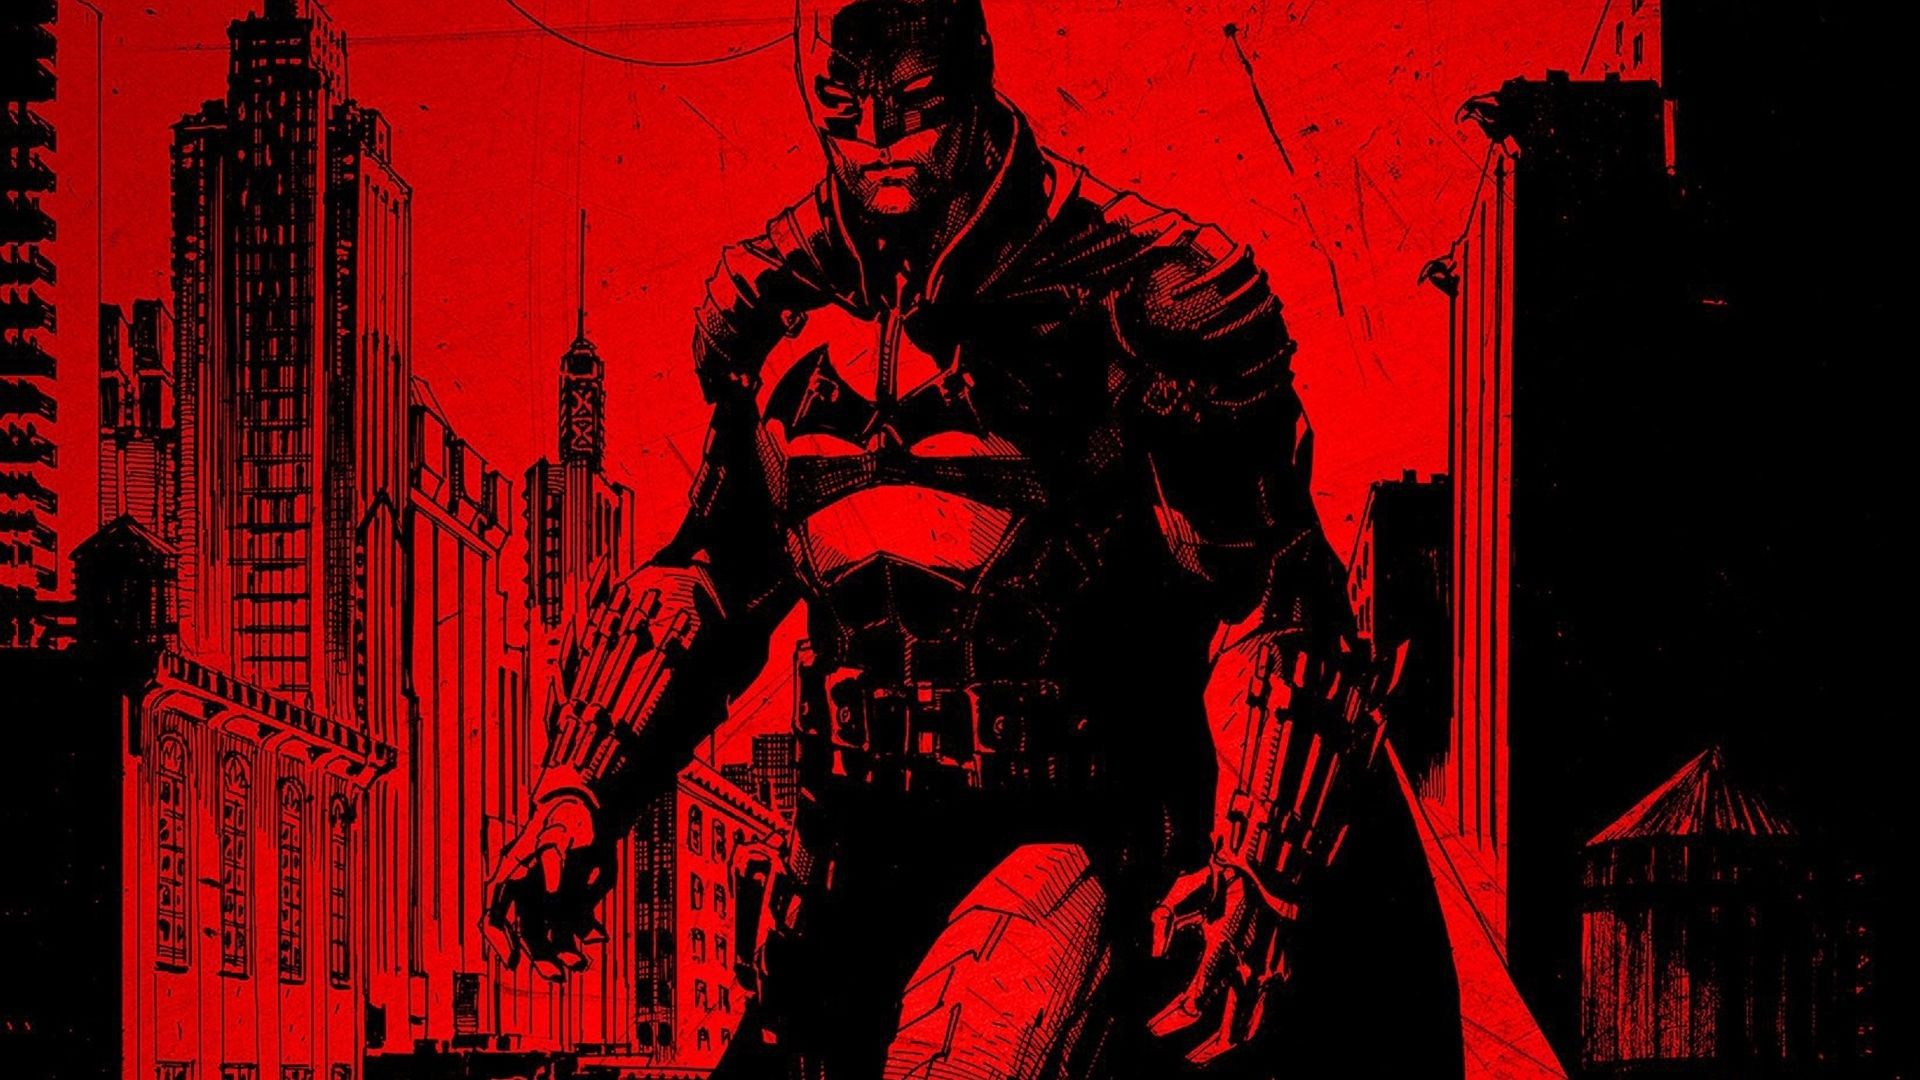 1920x1080 batman pc wallpaper free download hd  Superhero wallpaper, Batman  wallpaper, Superhero